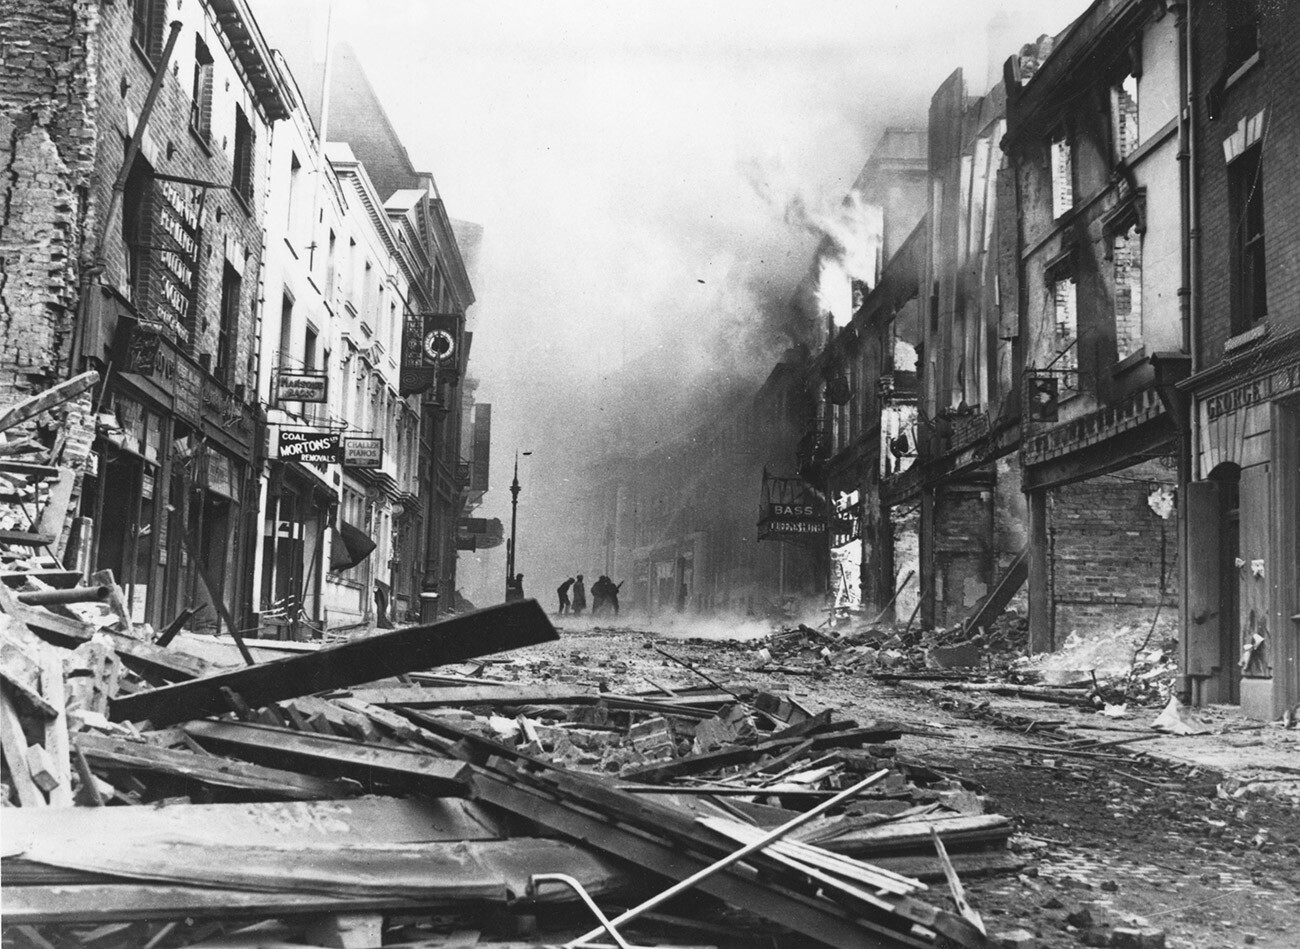 Hertford Street in Coventry nach deutschen Bombenangriffen.